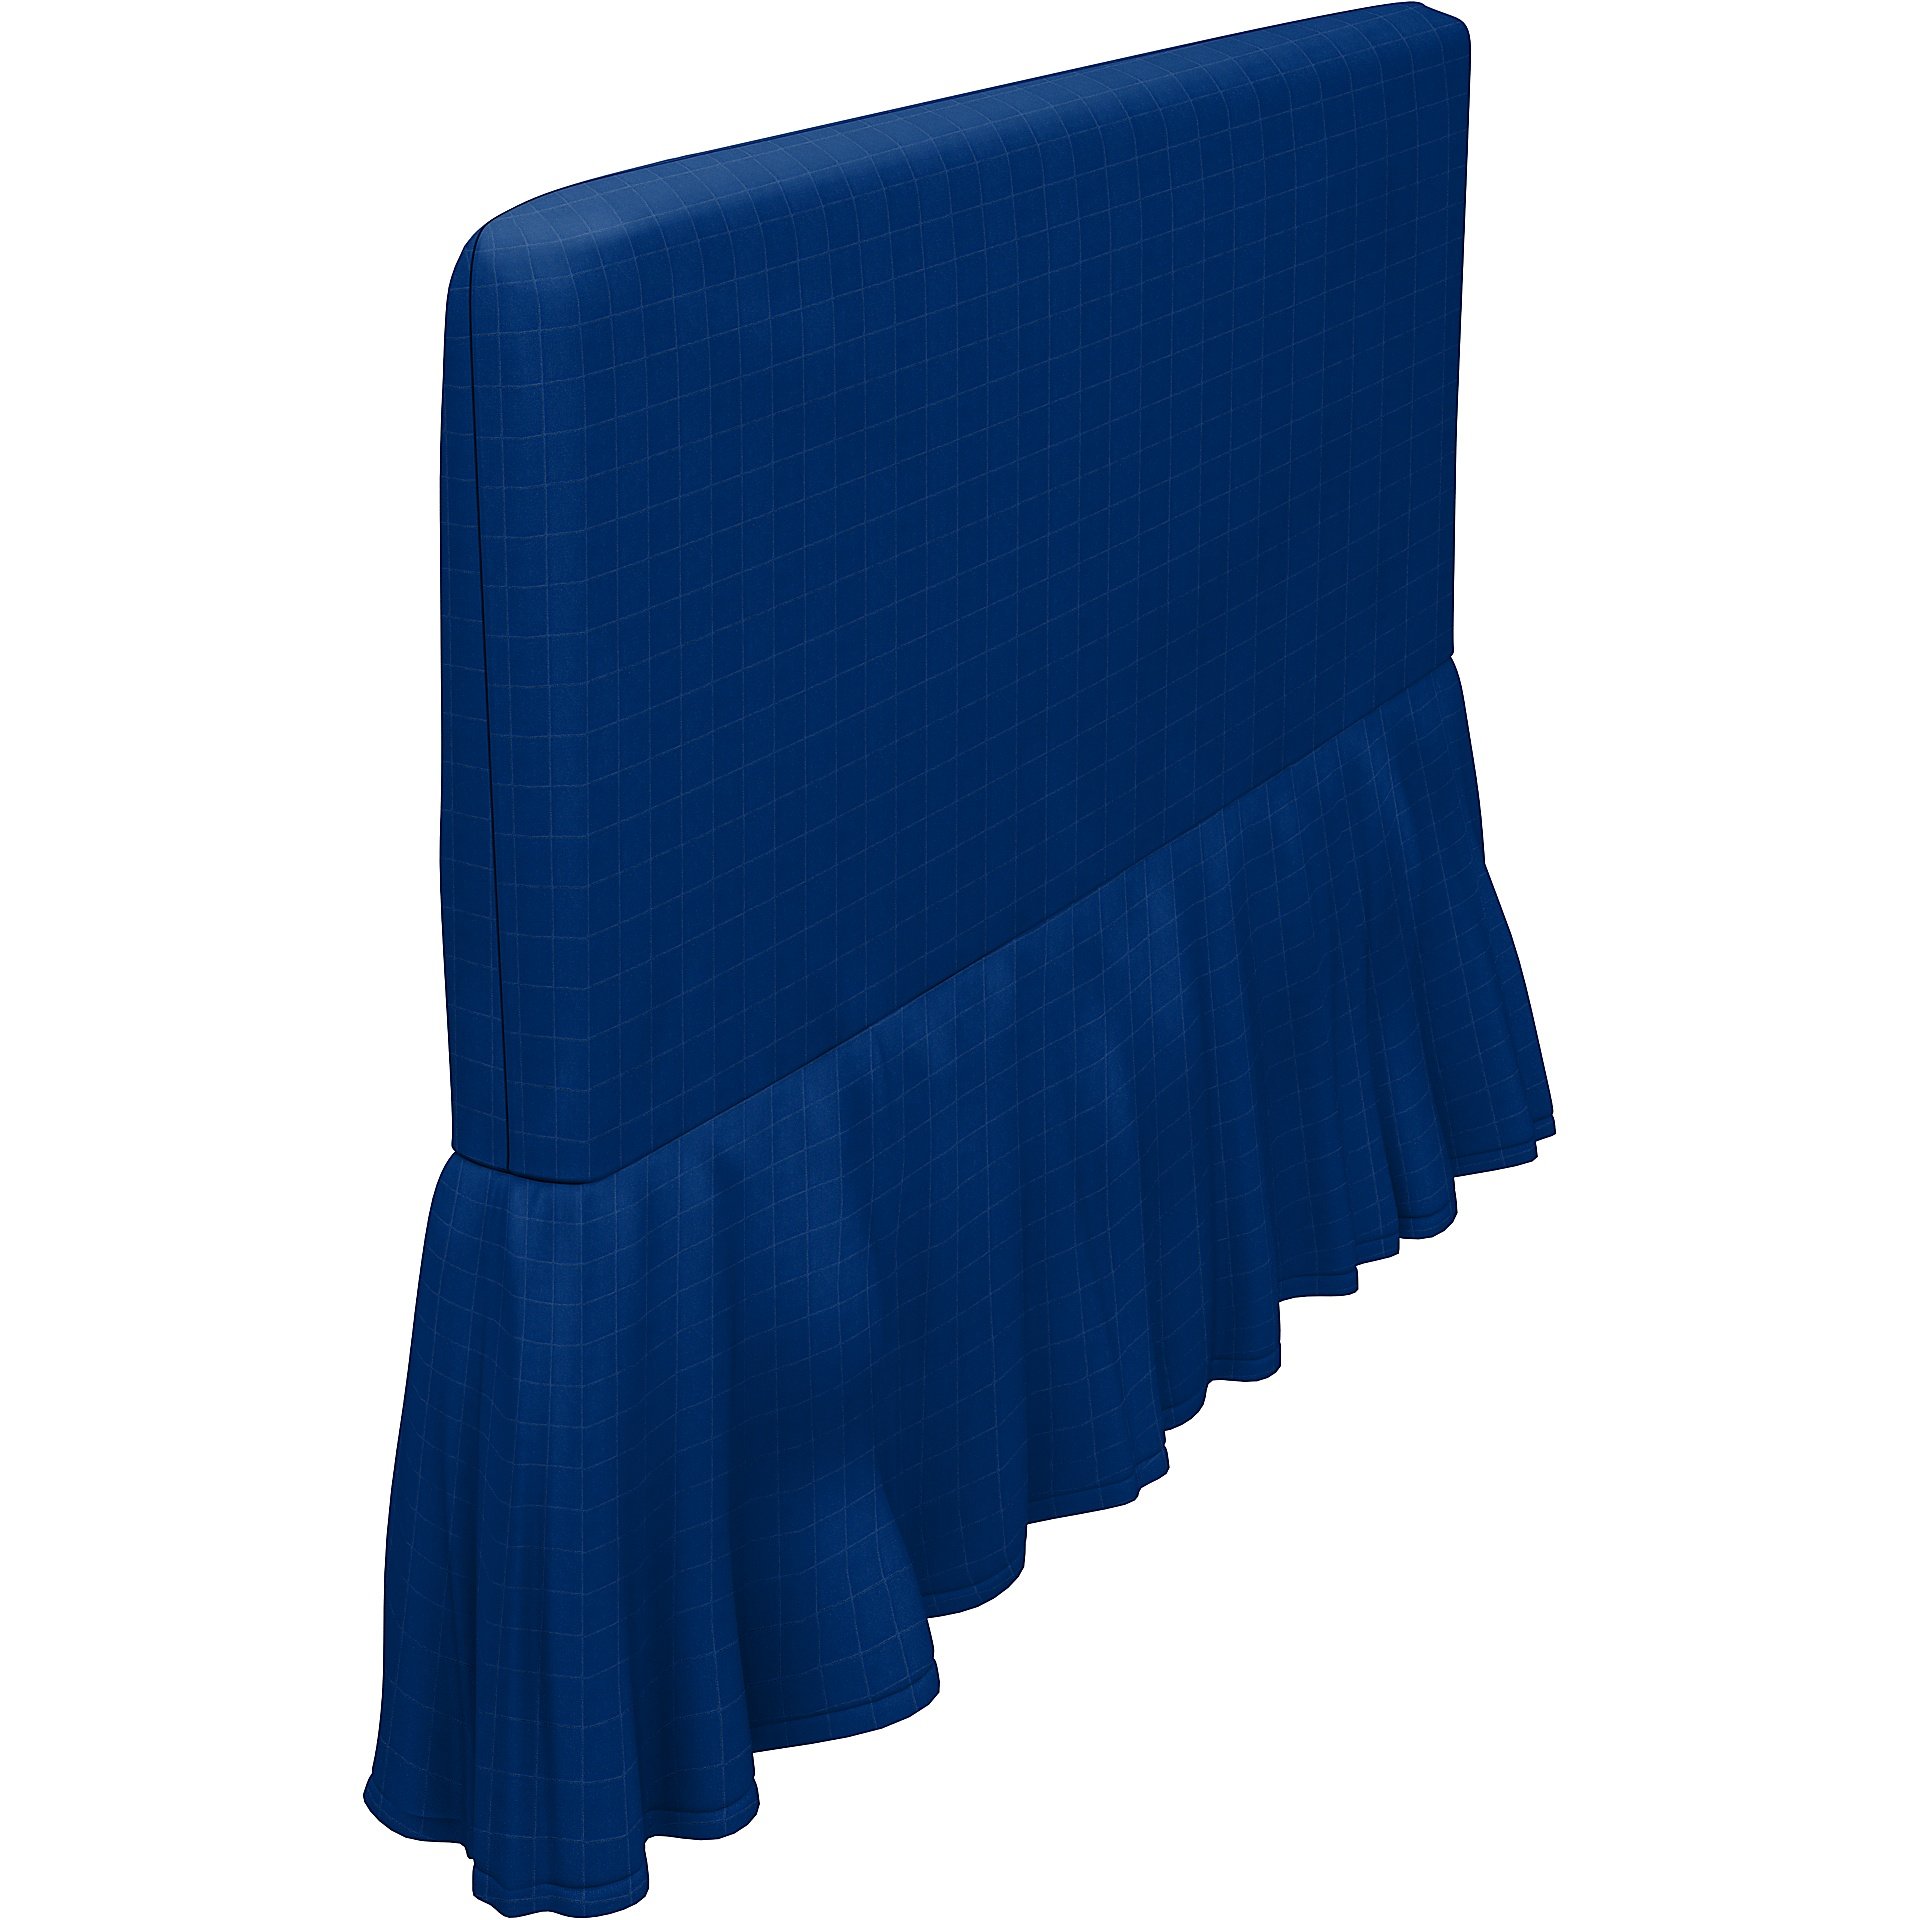 IKEA - Soderhamn armrest cover, Lapis Blue, Velvet - Bemz